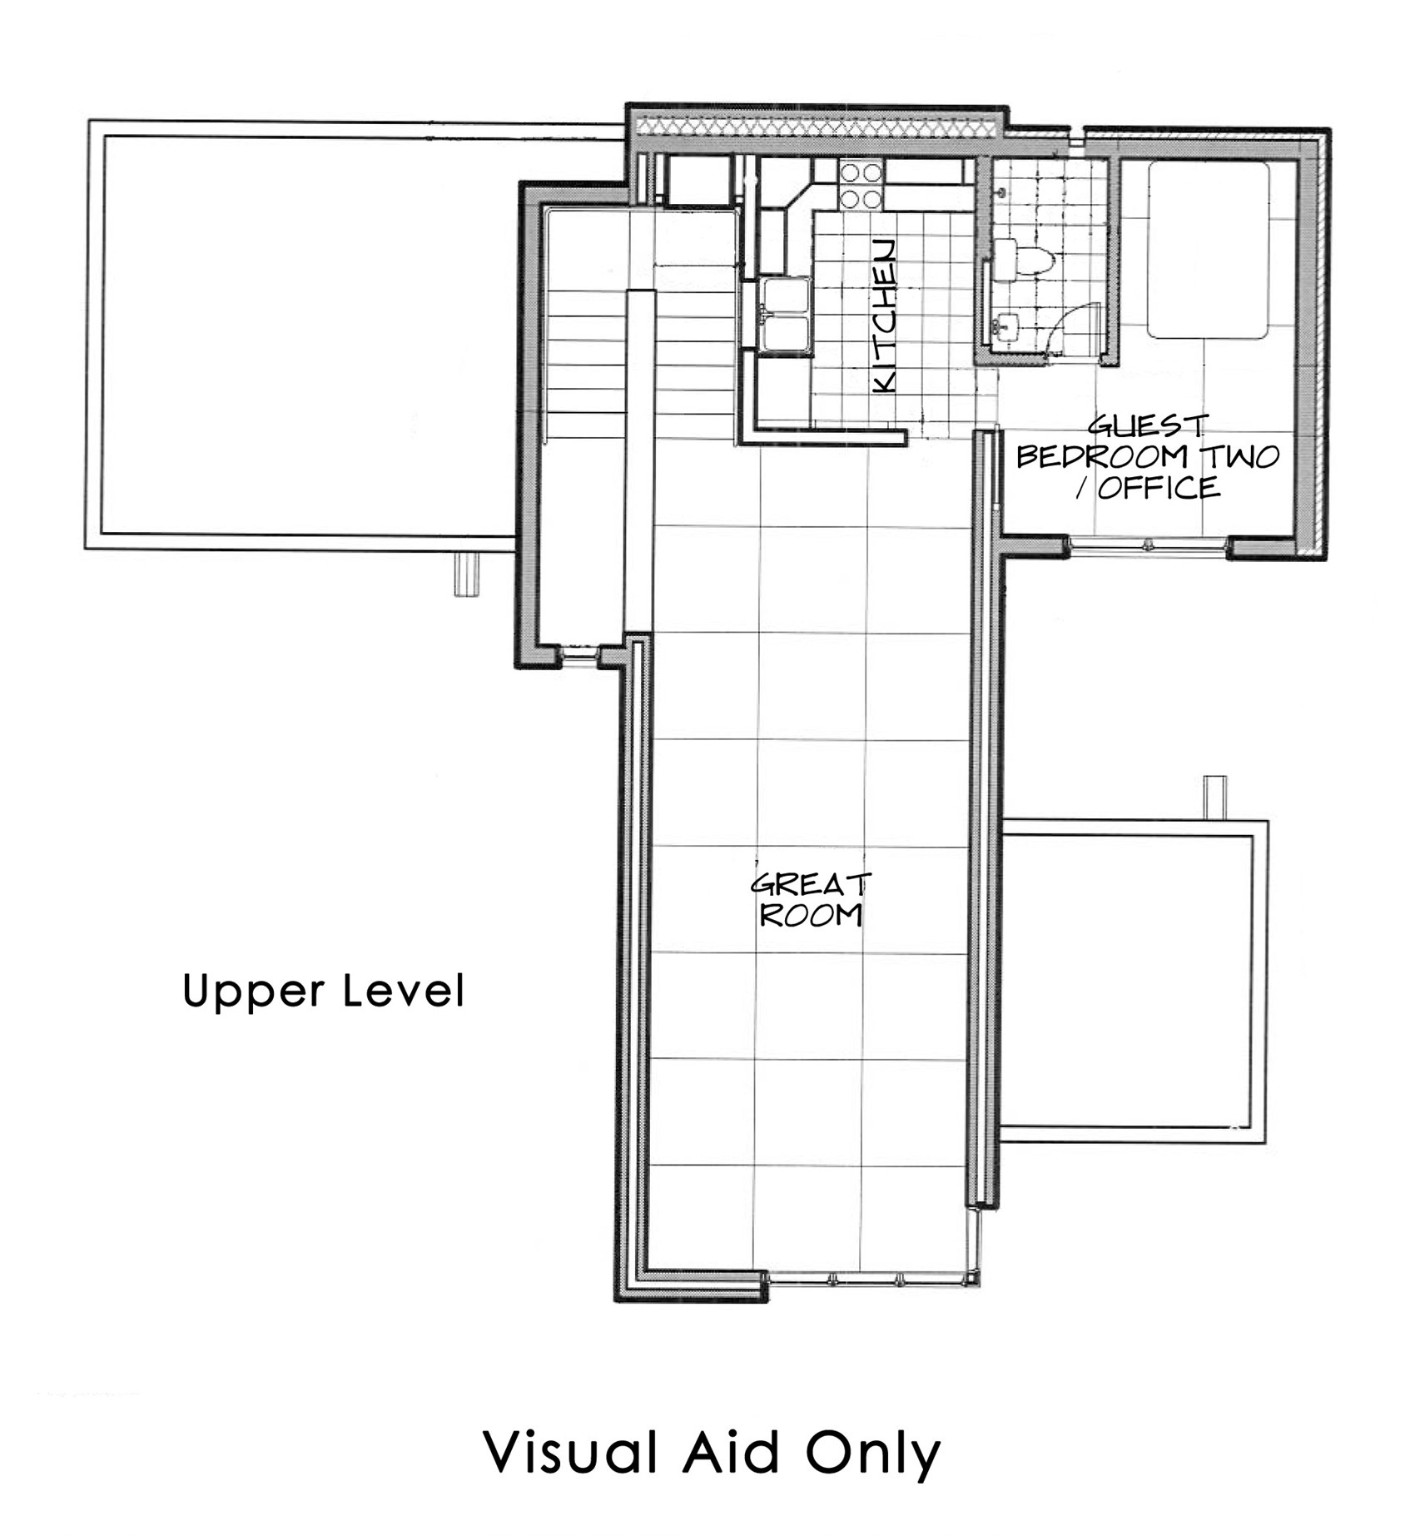 Upper Level Floor Plan
